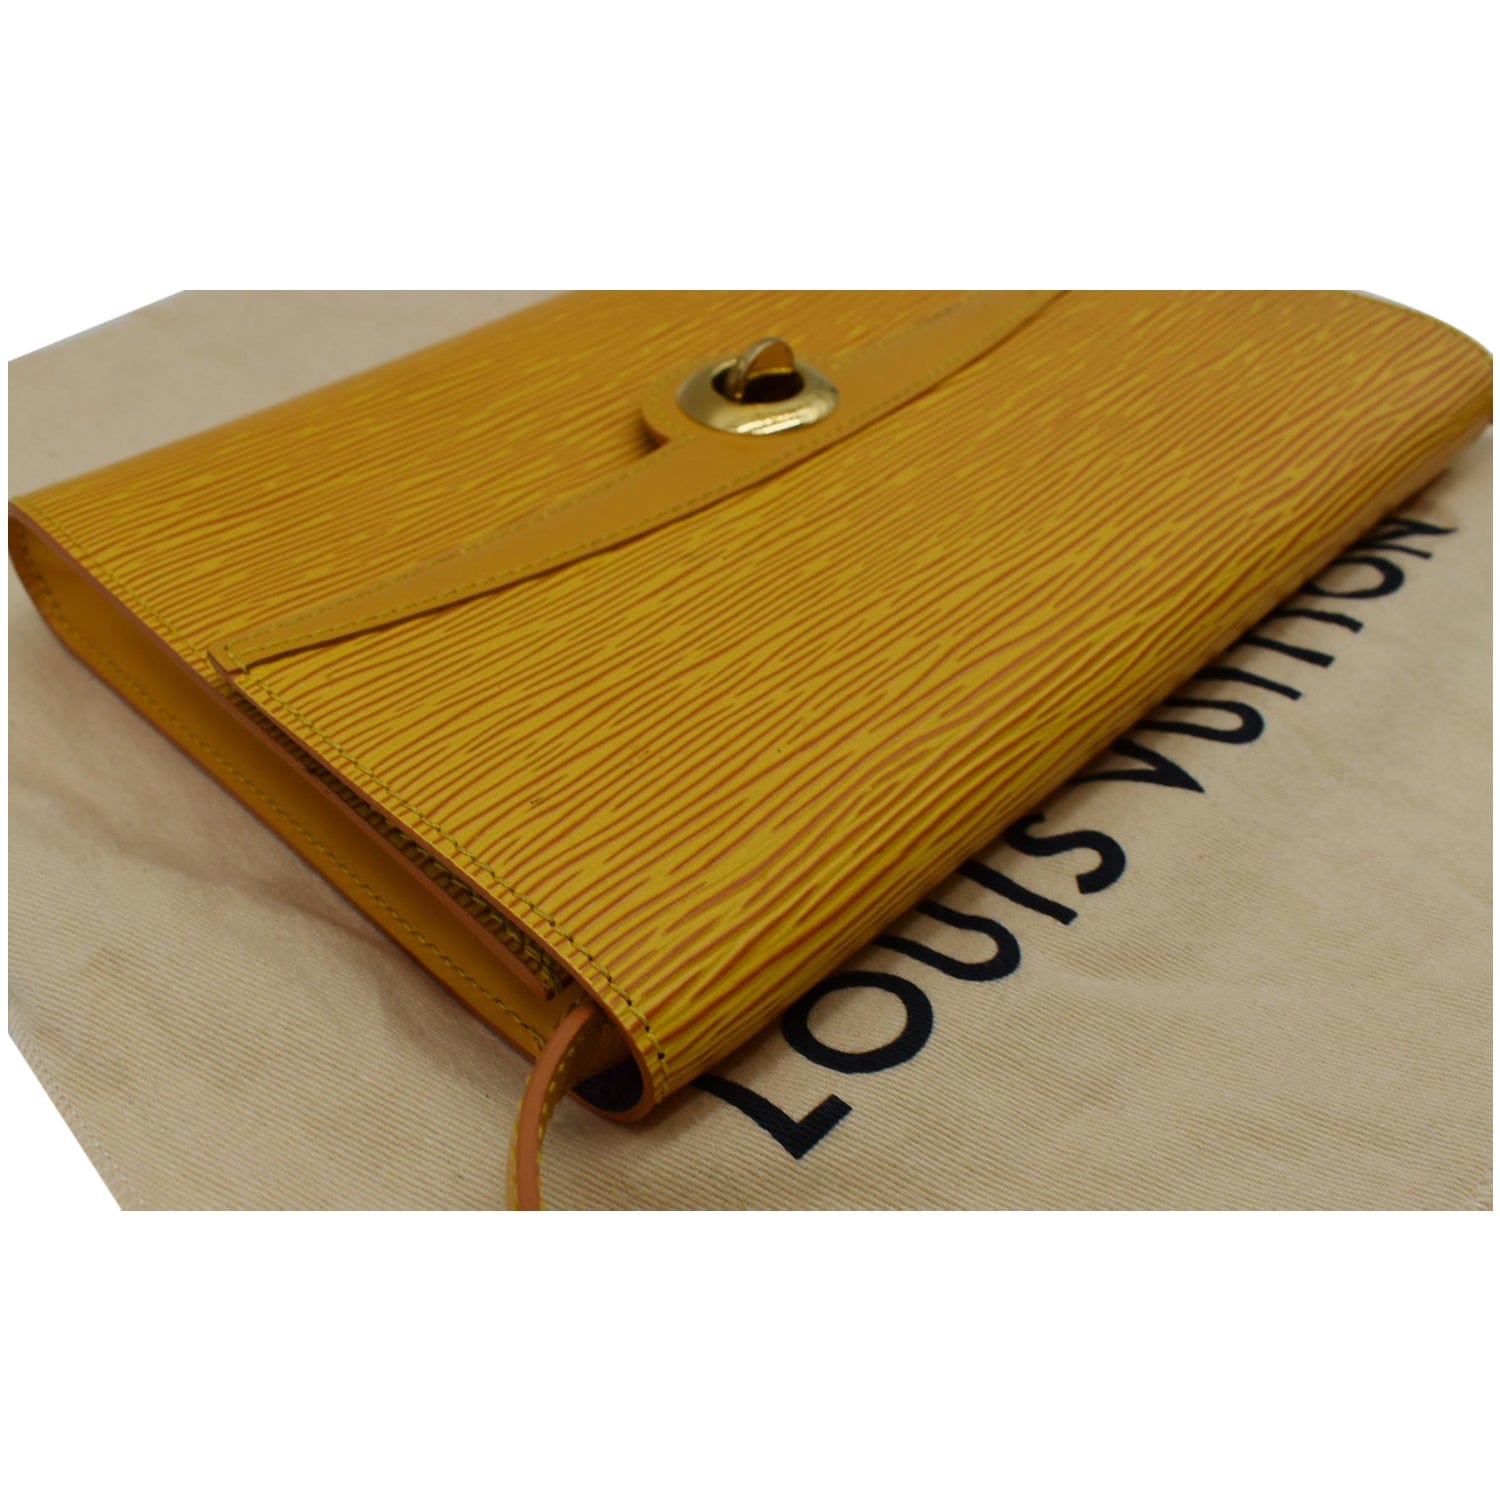 Pochette Epi Shoulder bag in Epi leather, Gold Hardware